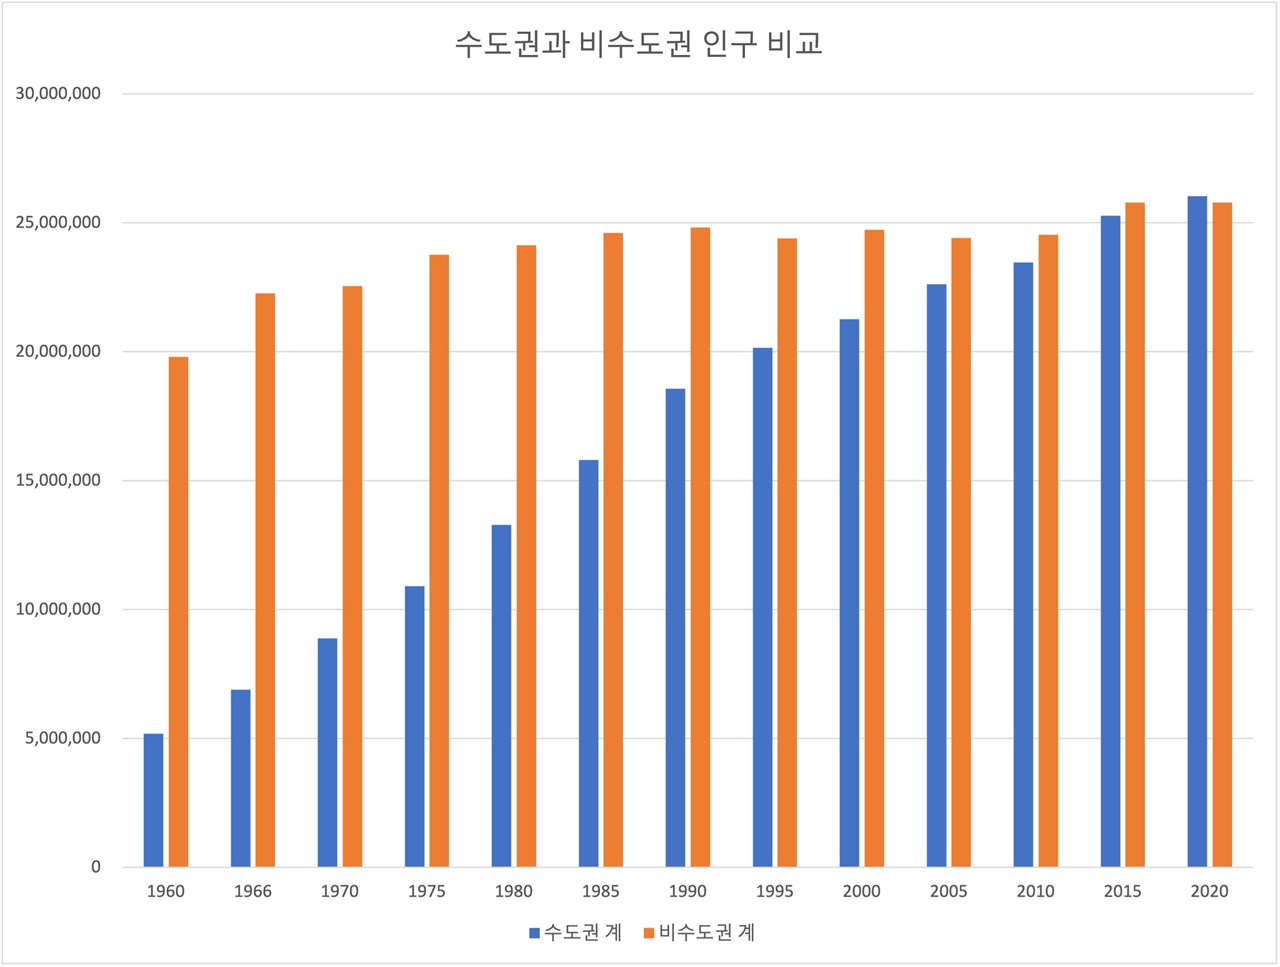 수도권과 비수도권의 인구 비교표다. 2020년 수도권(서울, 인천, 경기)의 인구가 비수도권 인구를 따라잡았다. 대한민국 인구 50%가 넘는 것이다.